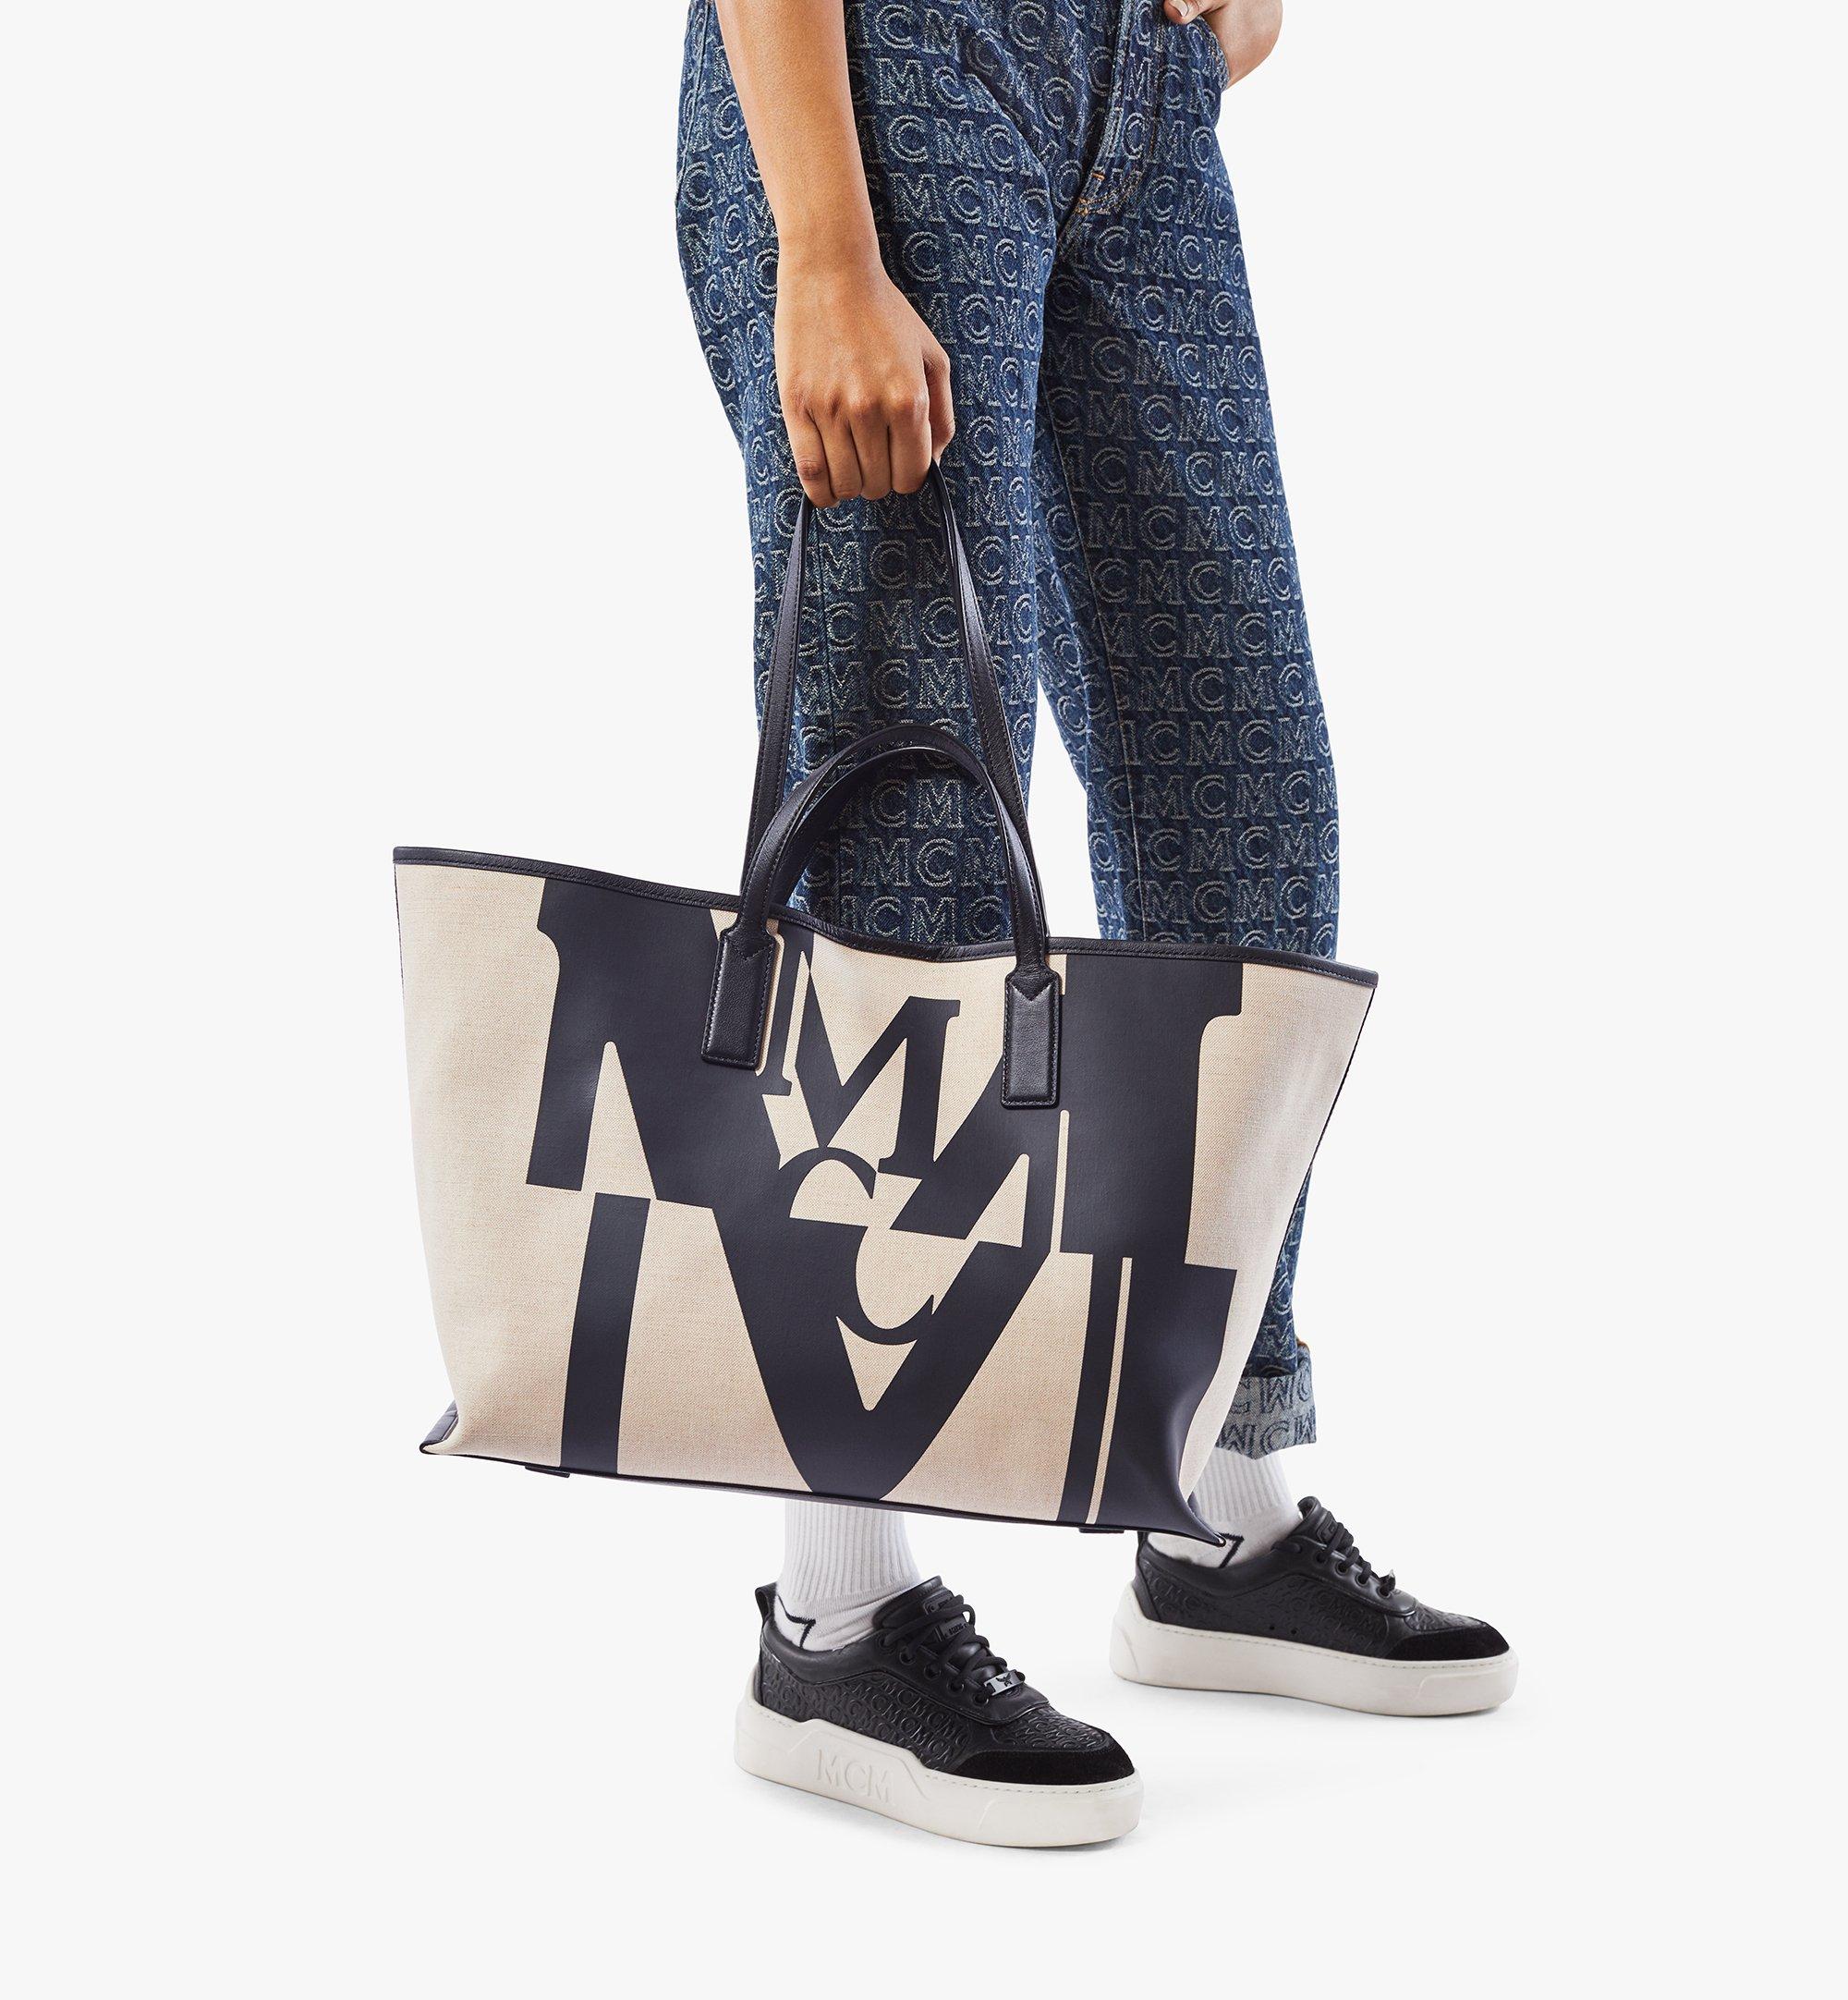 Mcm Logo Canvas Shoulder Bag